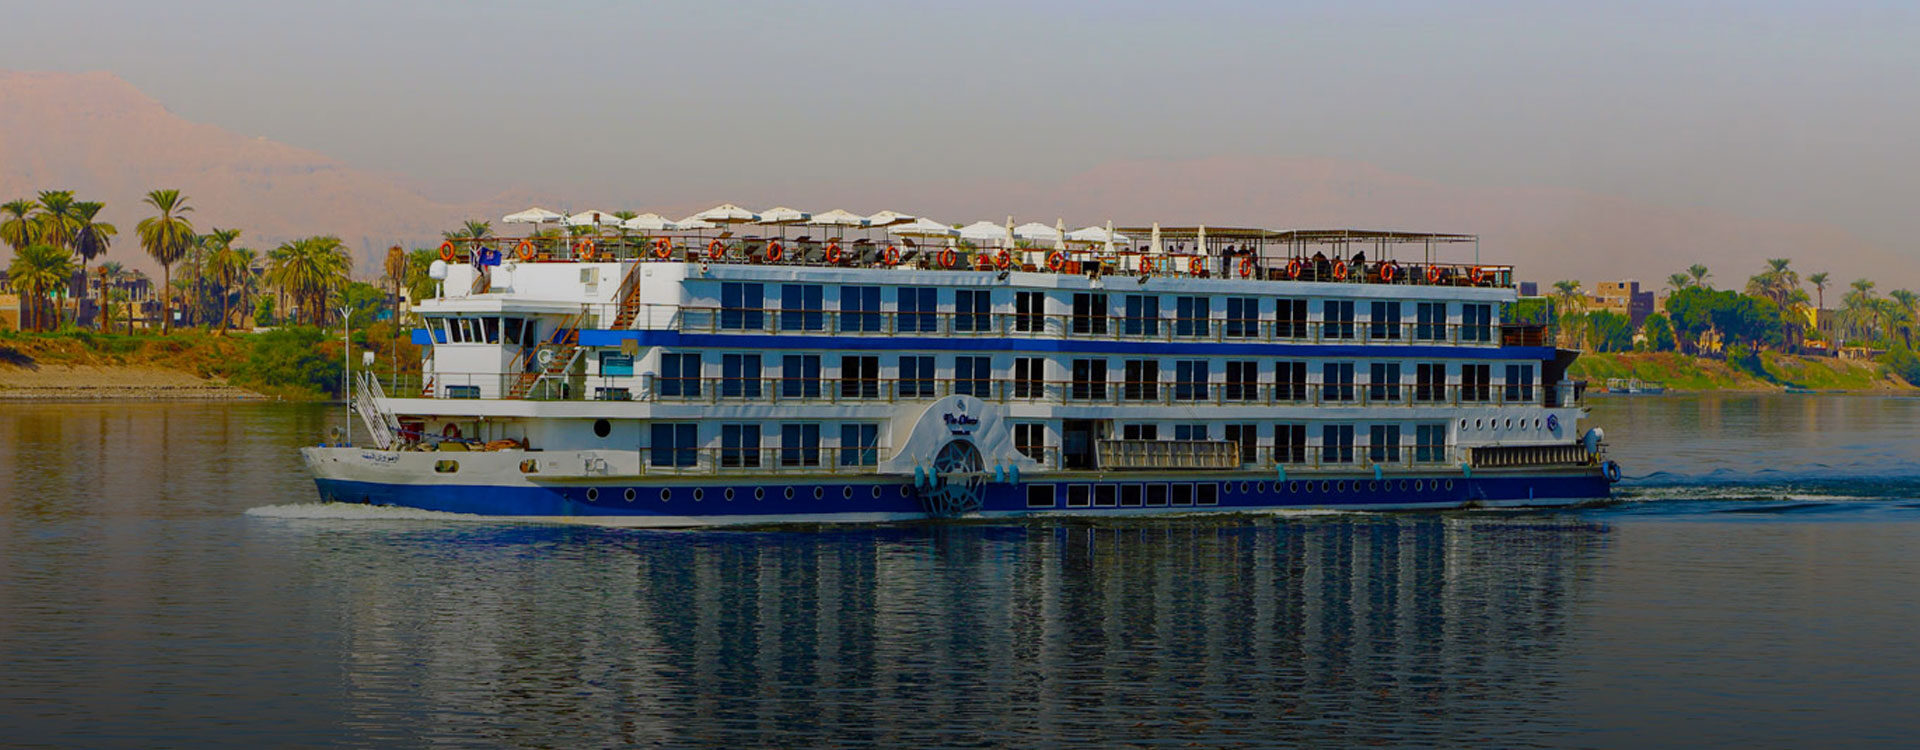 oberoi egypt nile cruise